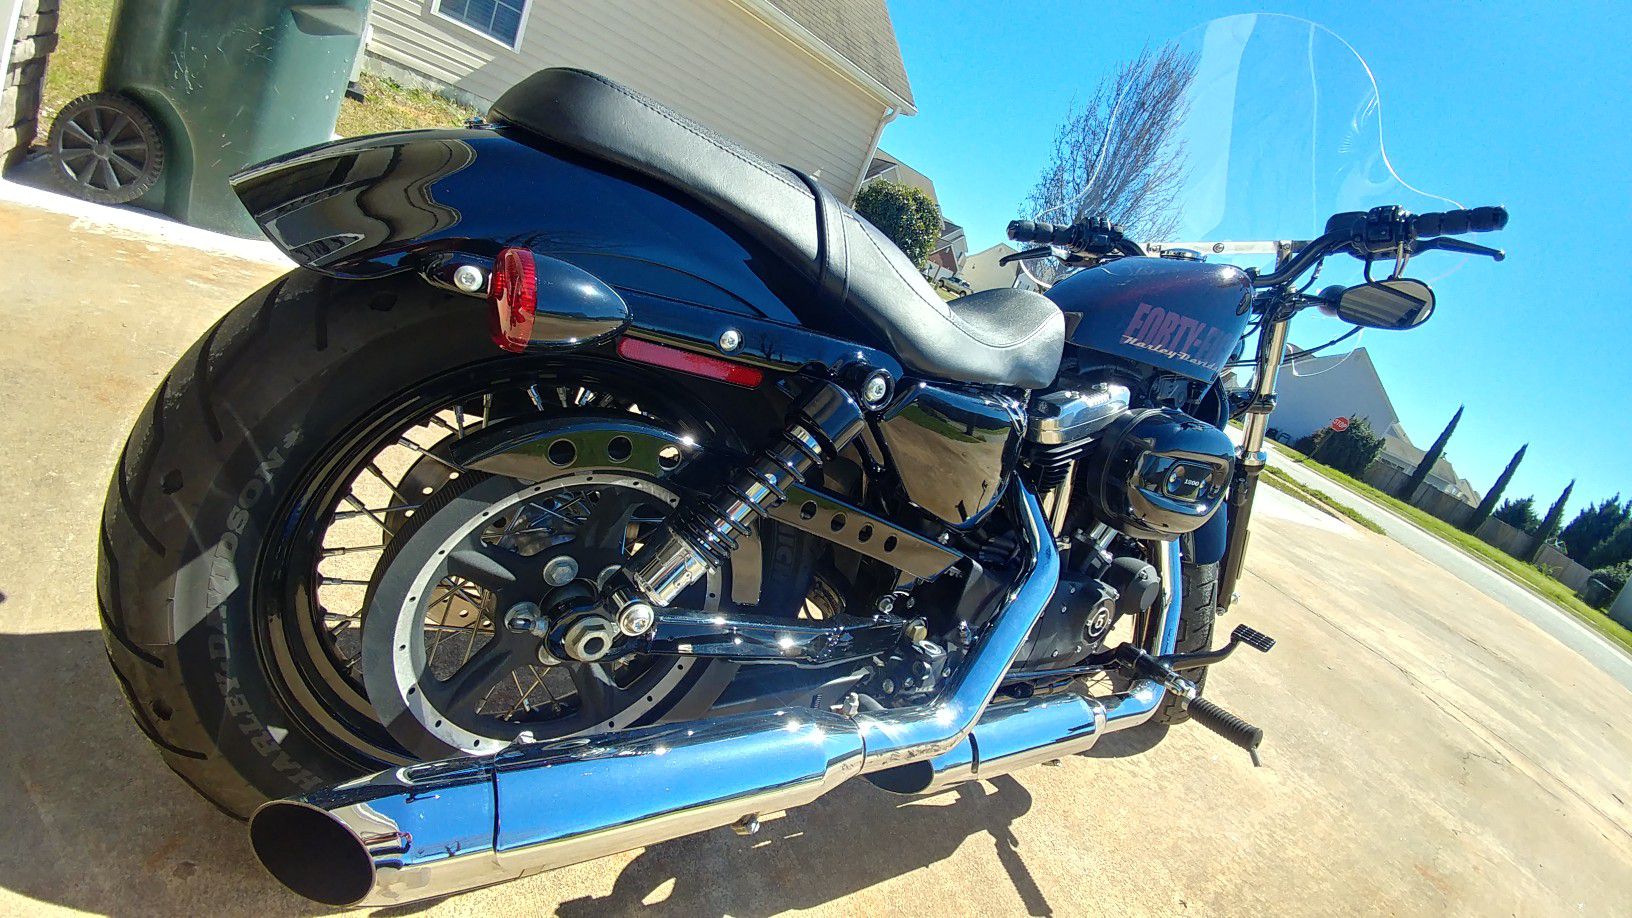 2014 Harley Davidson XL1200 Forty Eight $8000 o.b.o.